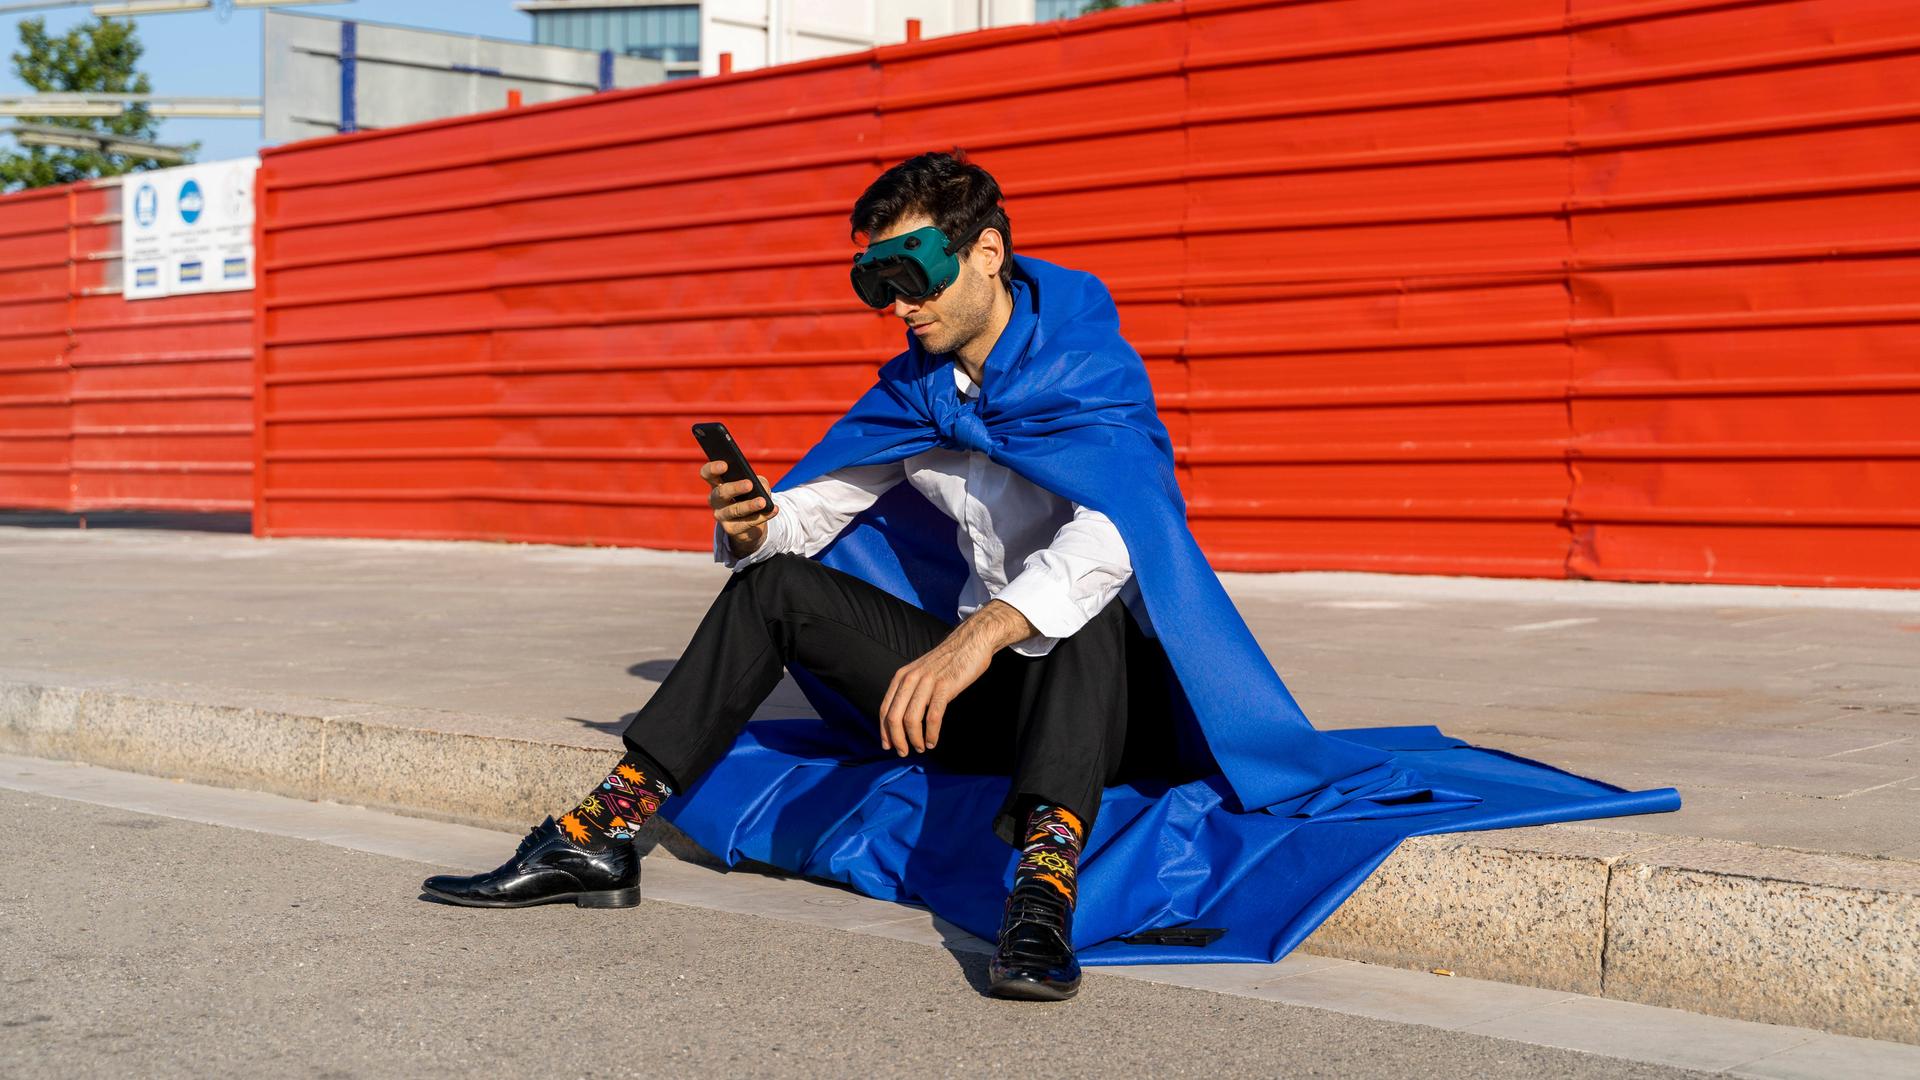 Mann in Anzug und Superhelden-Umhang und -Maske sitzt auf einem Gehsteig und schaut auf sein Smartphone.